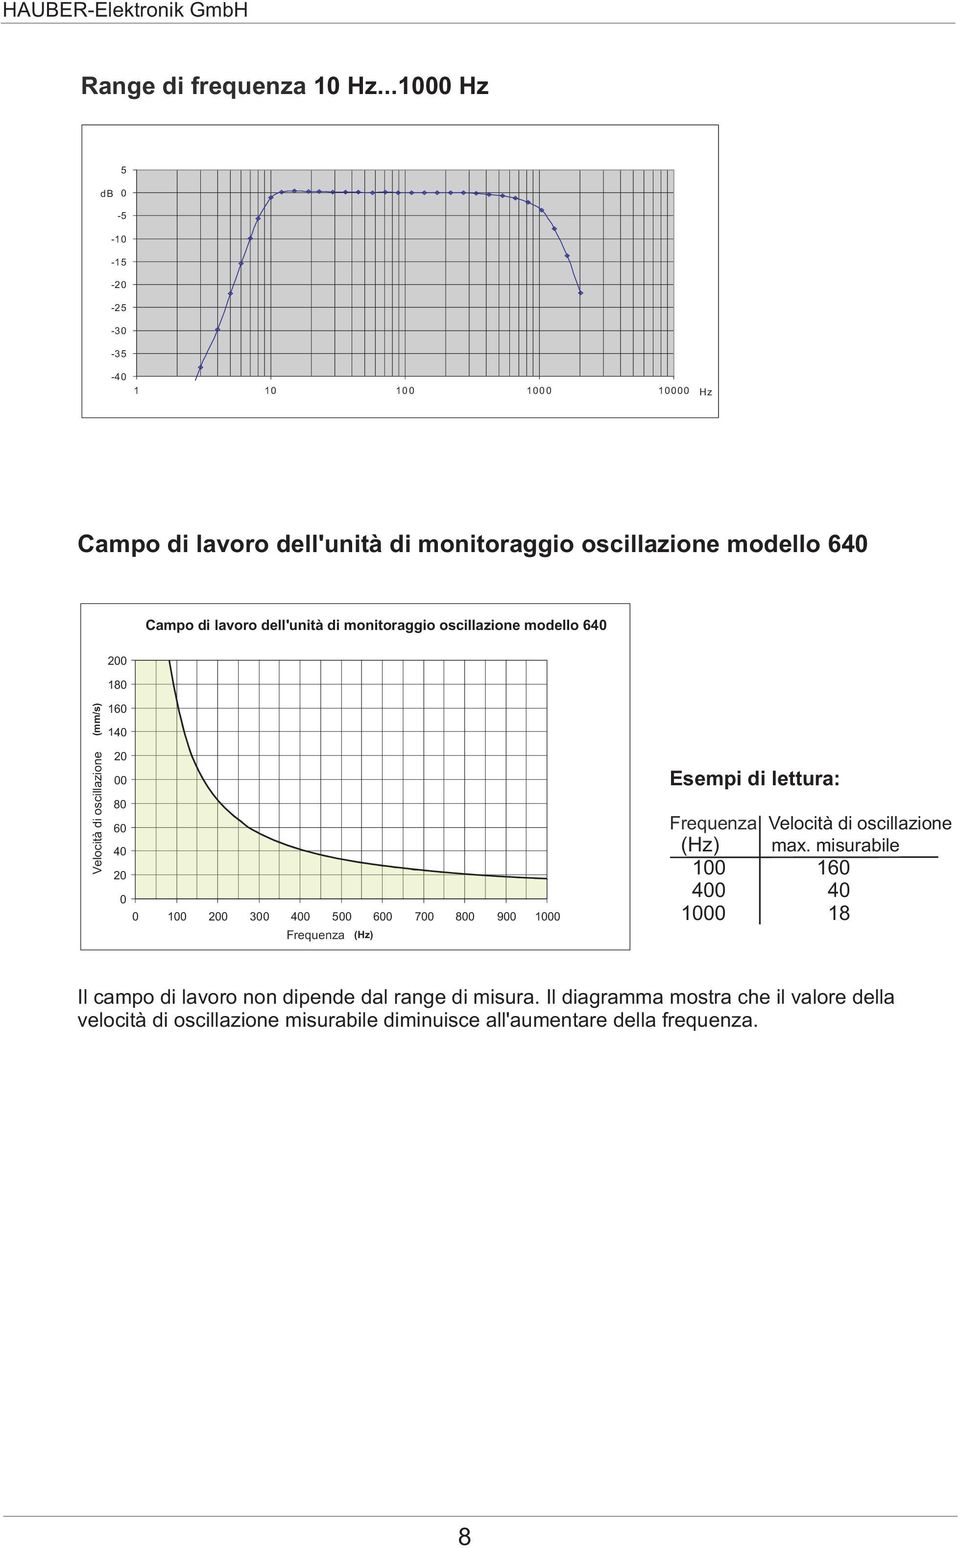 dell'unità interner di monitoraggio Sensorbaustein oscillazione modello 640 200 180 Velocità Schwinggeschwindigkeit oscillazione (mm/s) 160 140 120 100 80 60 40 20 0 0